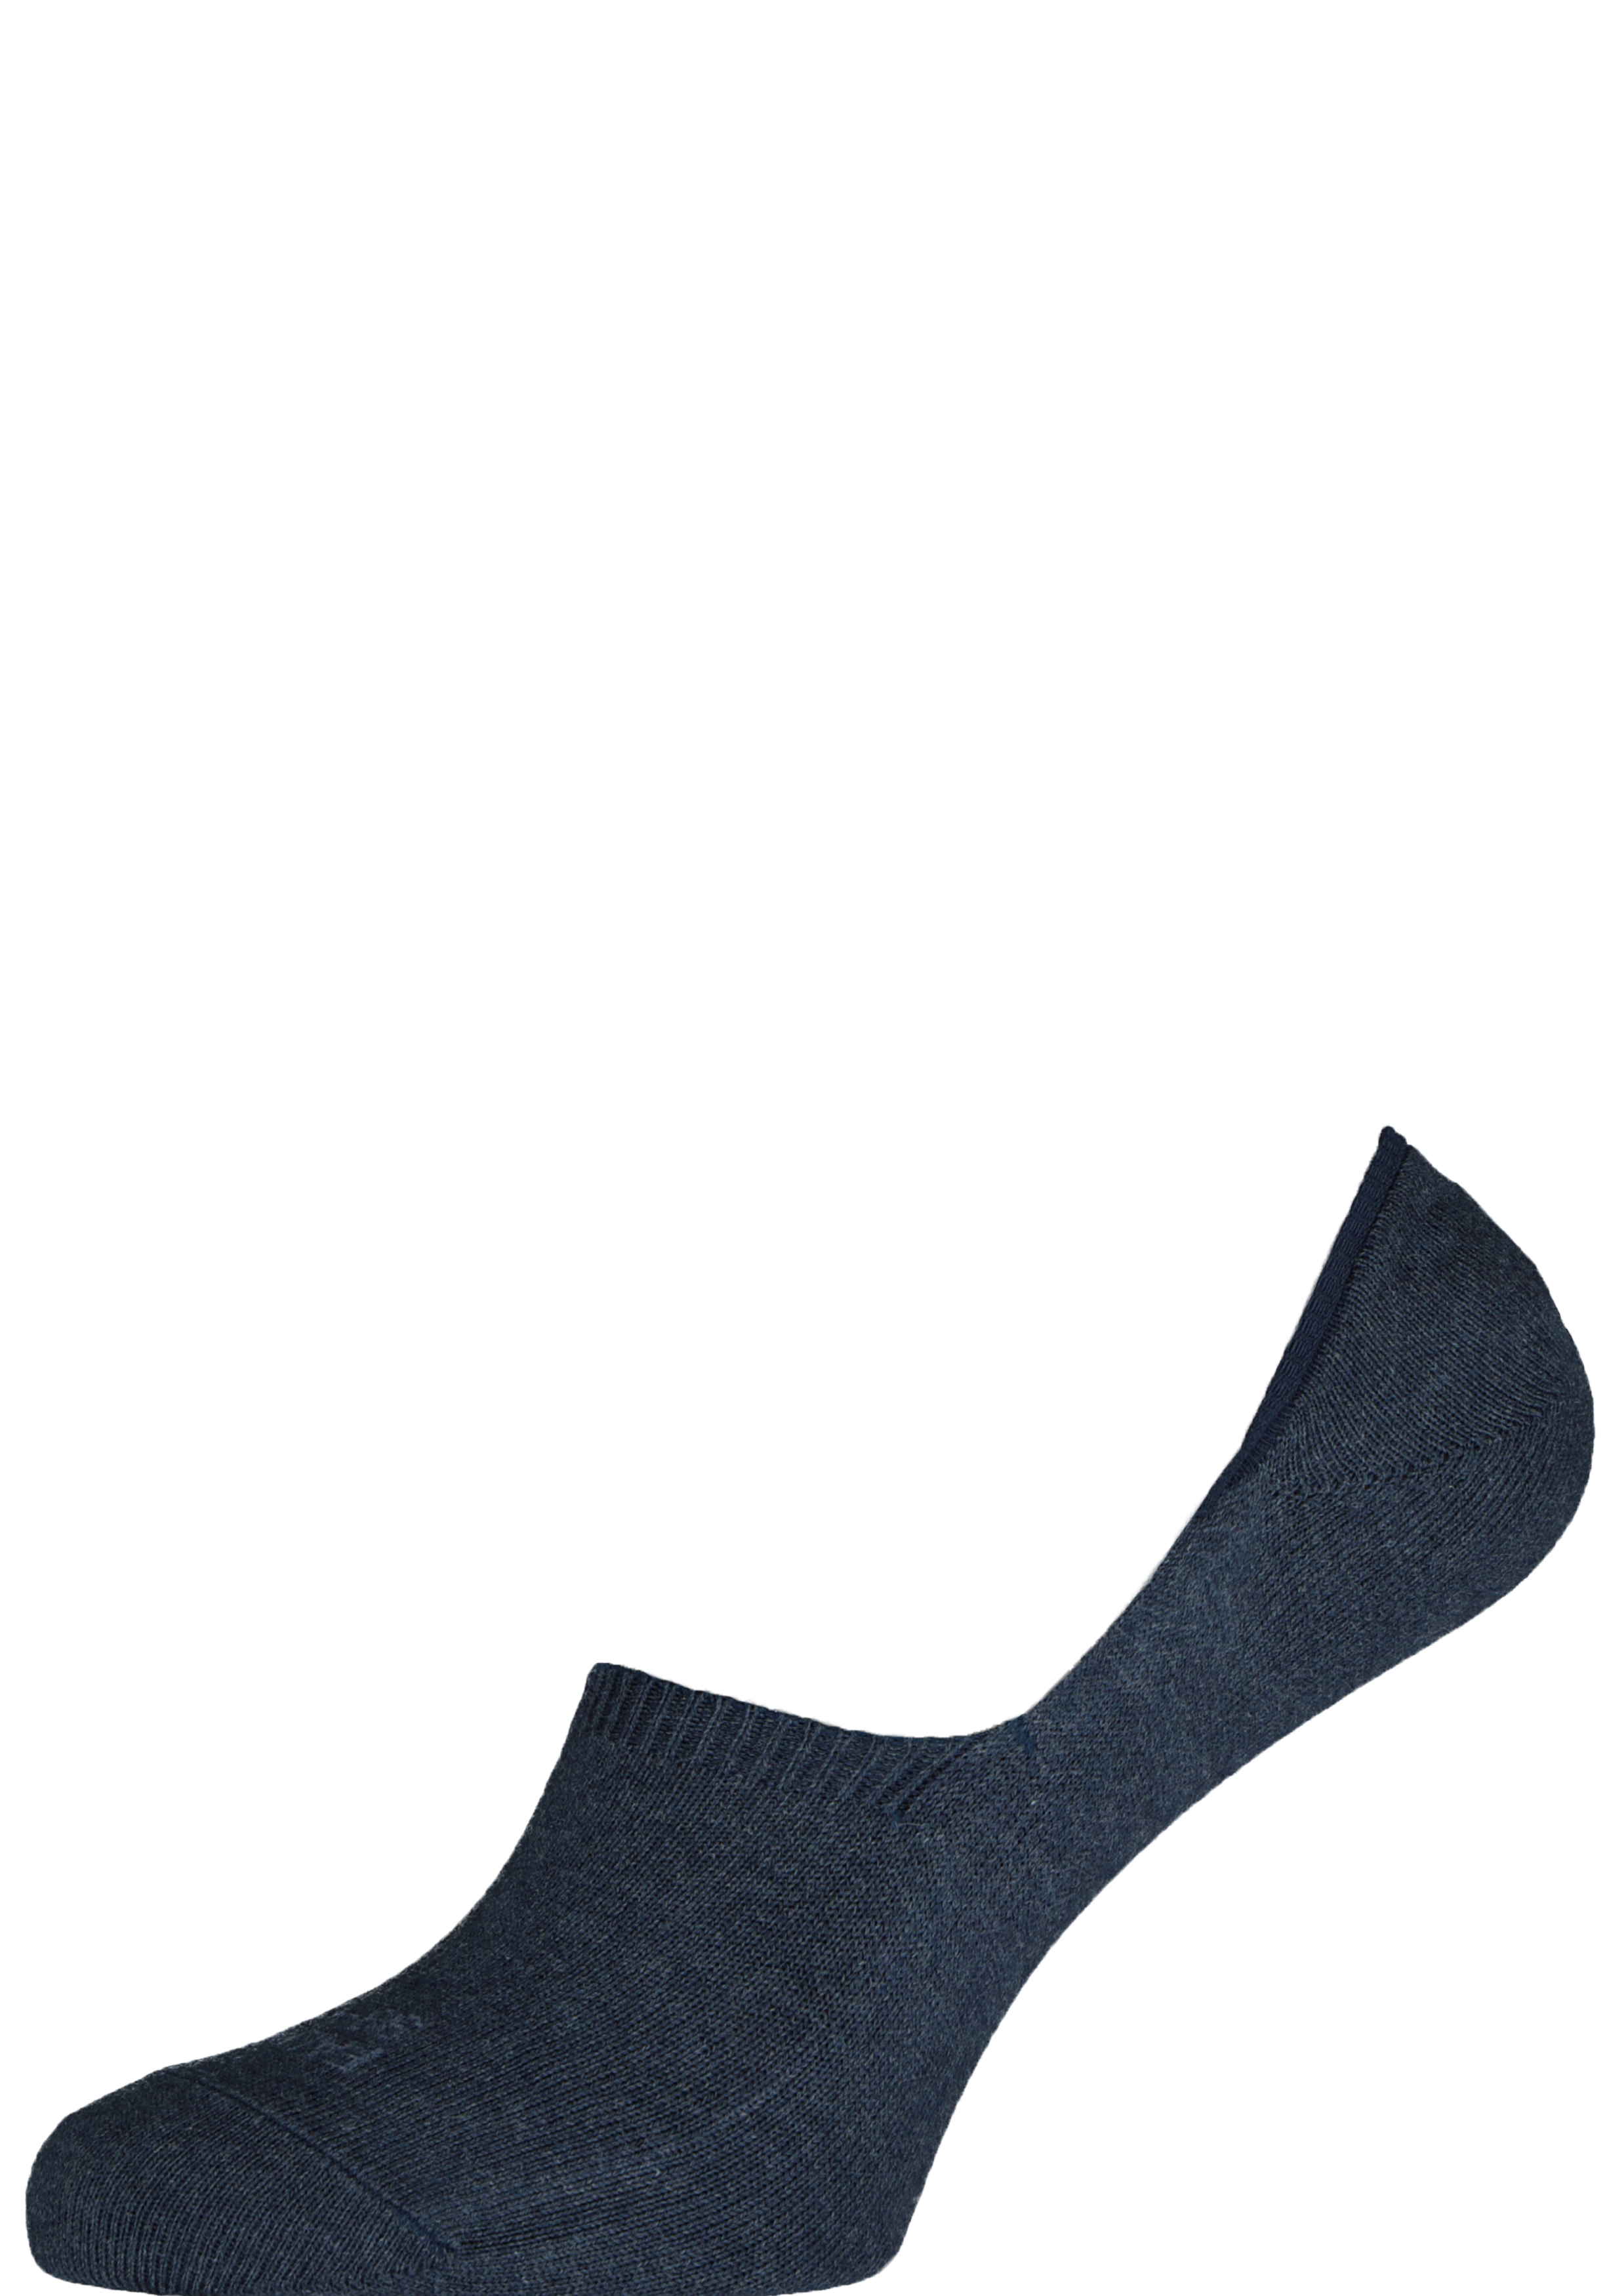 FALKE Family heren invisible sokken, blauw melange (navy melange)